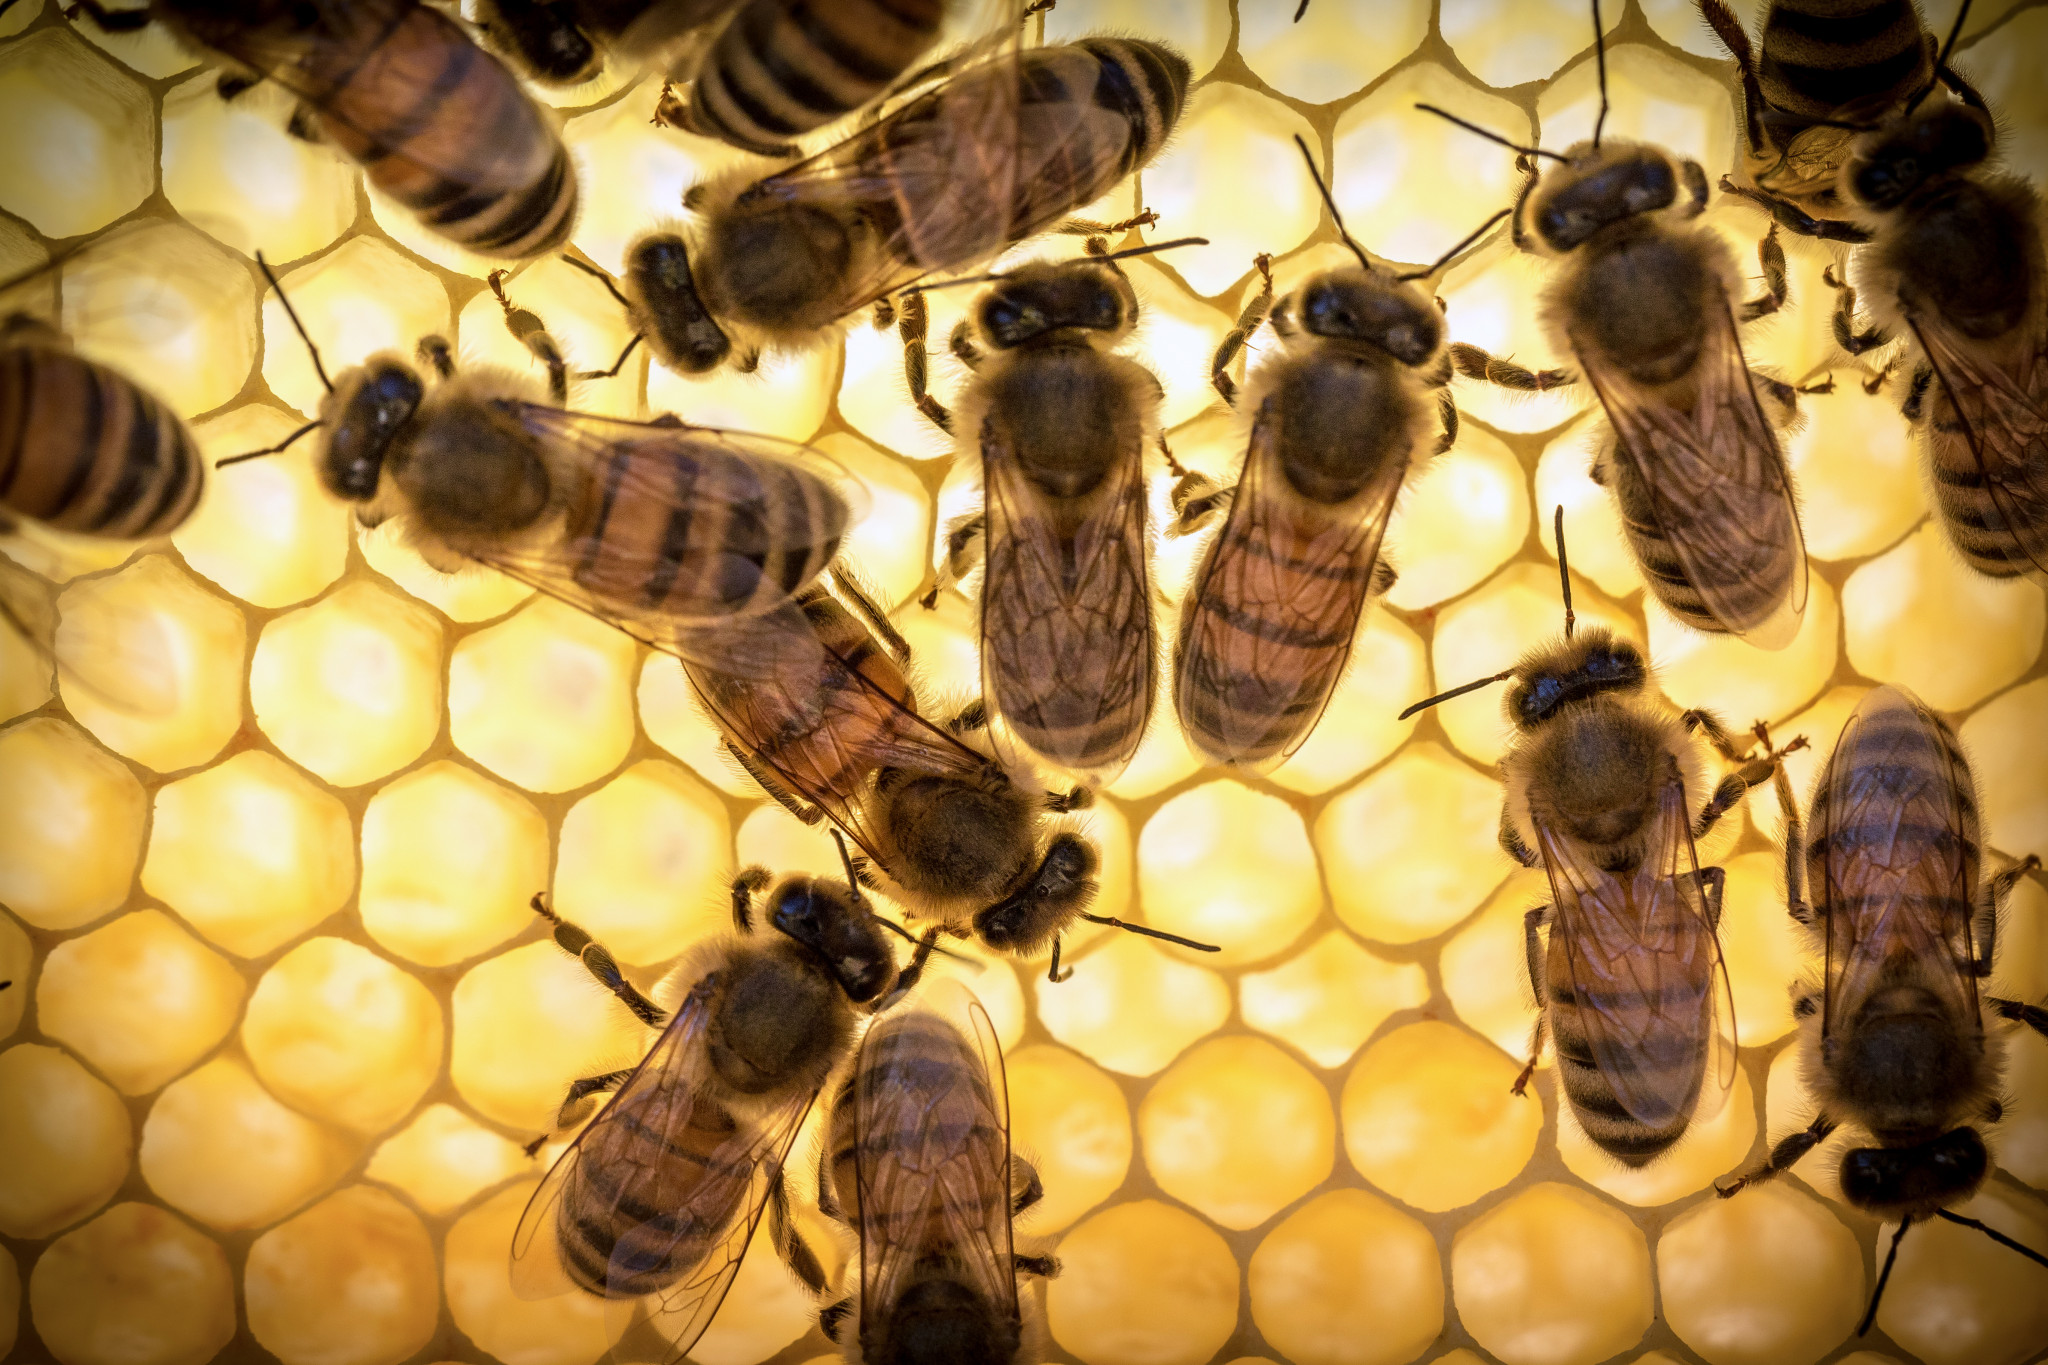 Il n’est pas recommandé d’utiliser la gelée royale d’abeilles la nuit, car son influence augmente l’activité nerveuse et l’insomnie possible